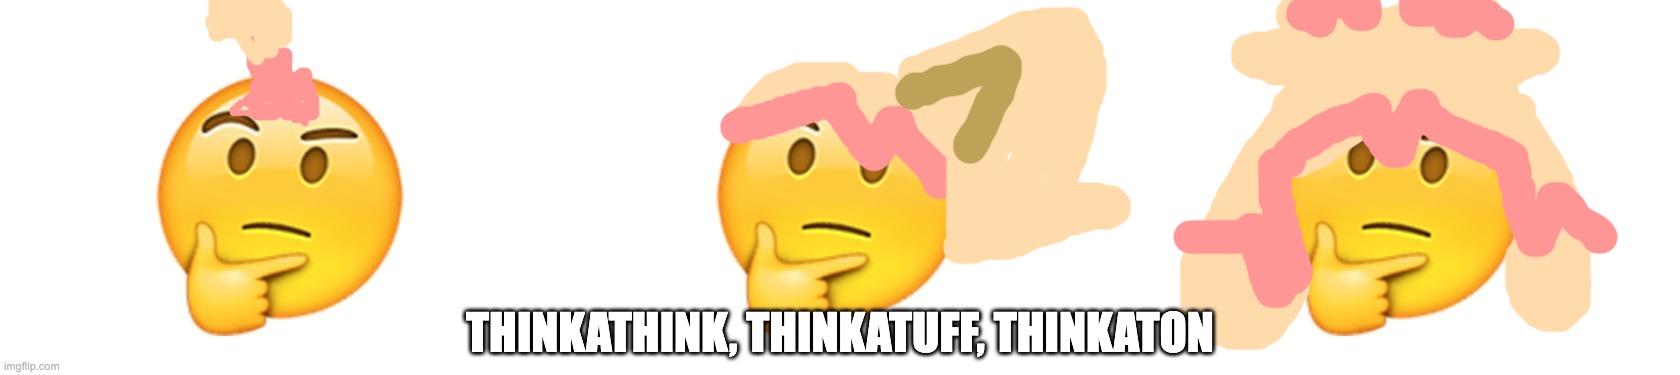 Thinking emoji - Imgflip